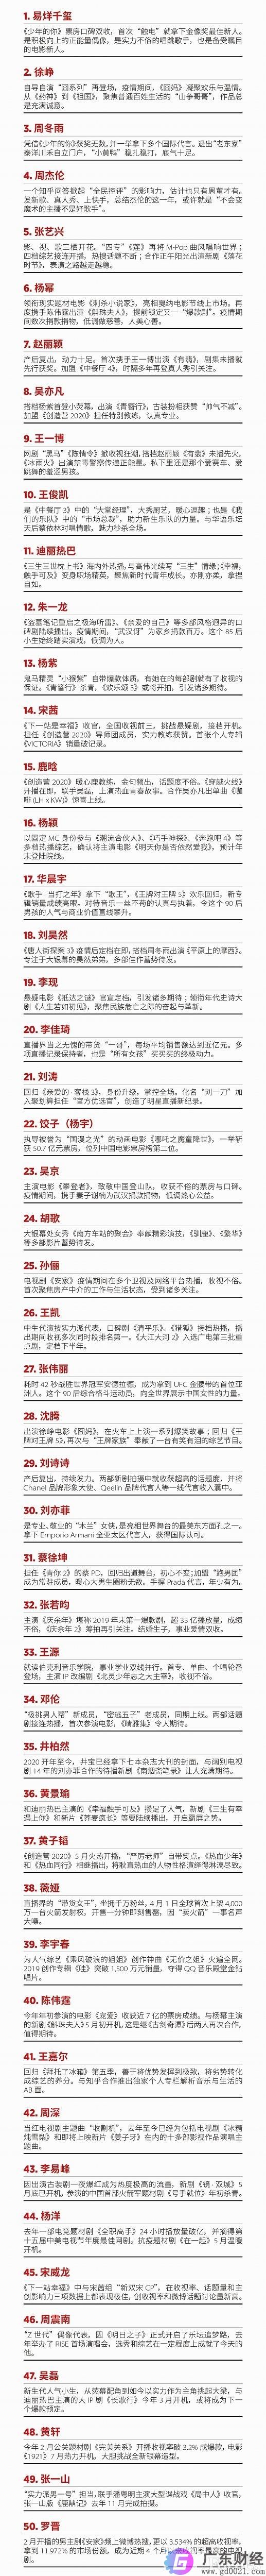 2020福布斯中国名人榜完整名单 易烊千玺位列榜首